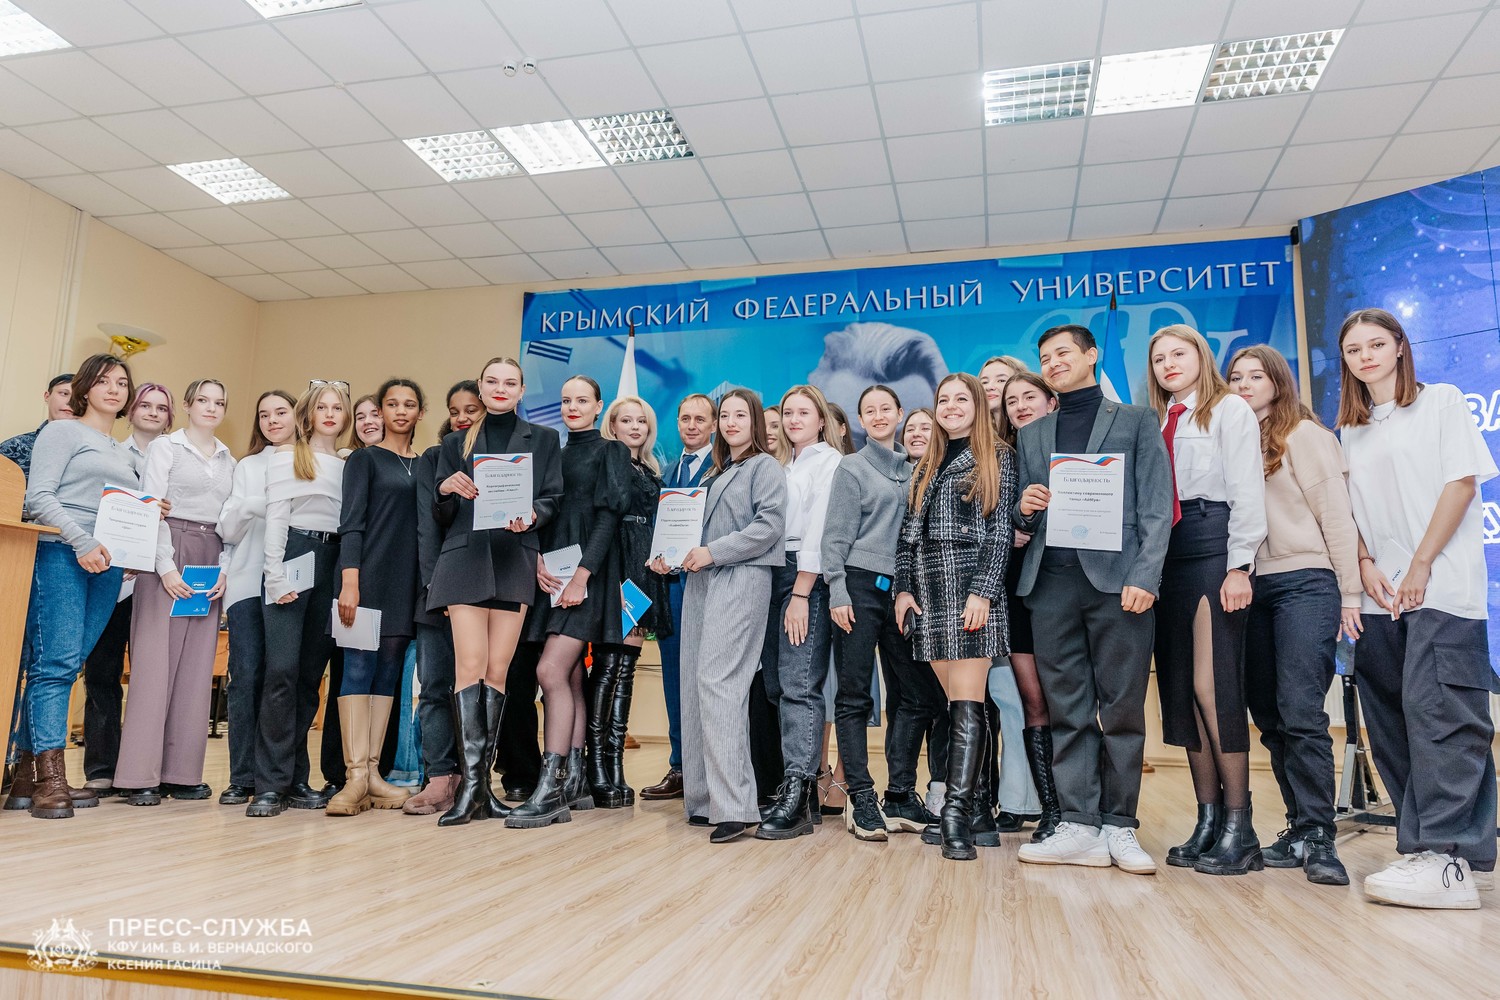 День студенчества в Крыму: Аксенов, награды, девушки, коньки и бадминтон